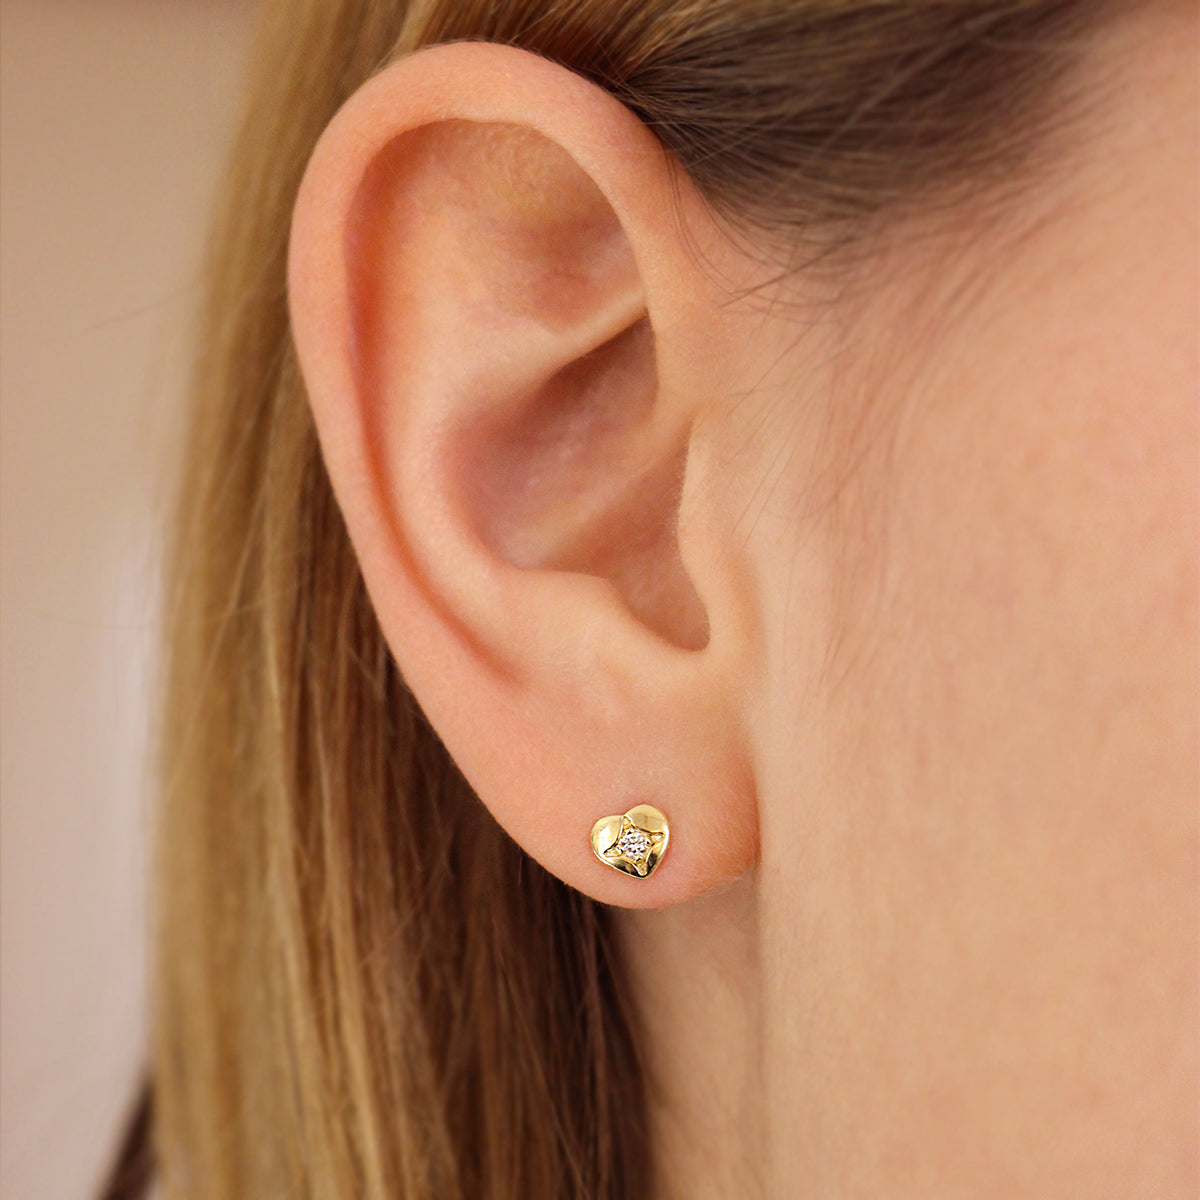 Earrings - Heart lobe earrings with central lab-grown diamond - ORO18KT - 2 | Rue des Mille